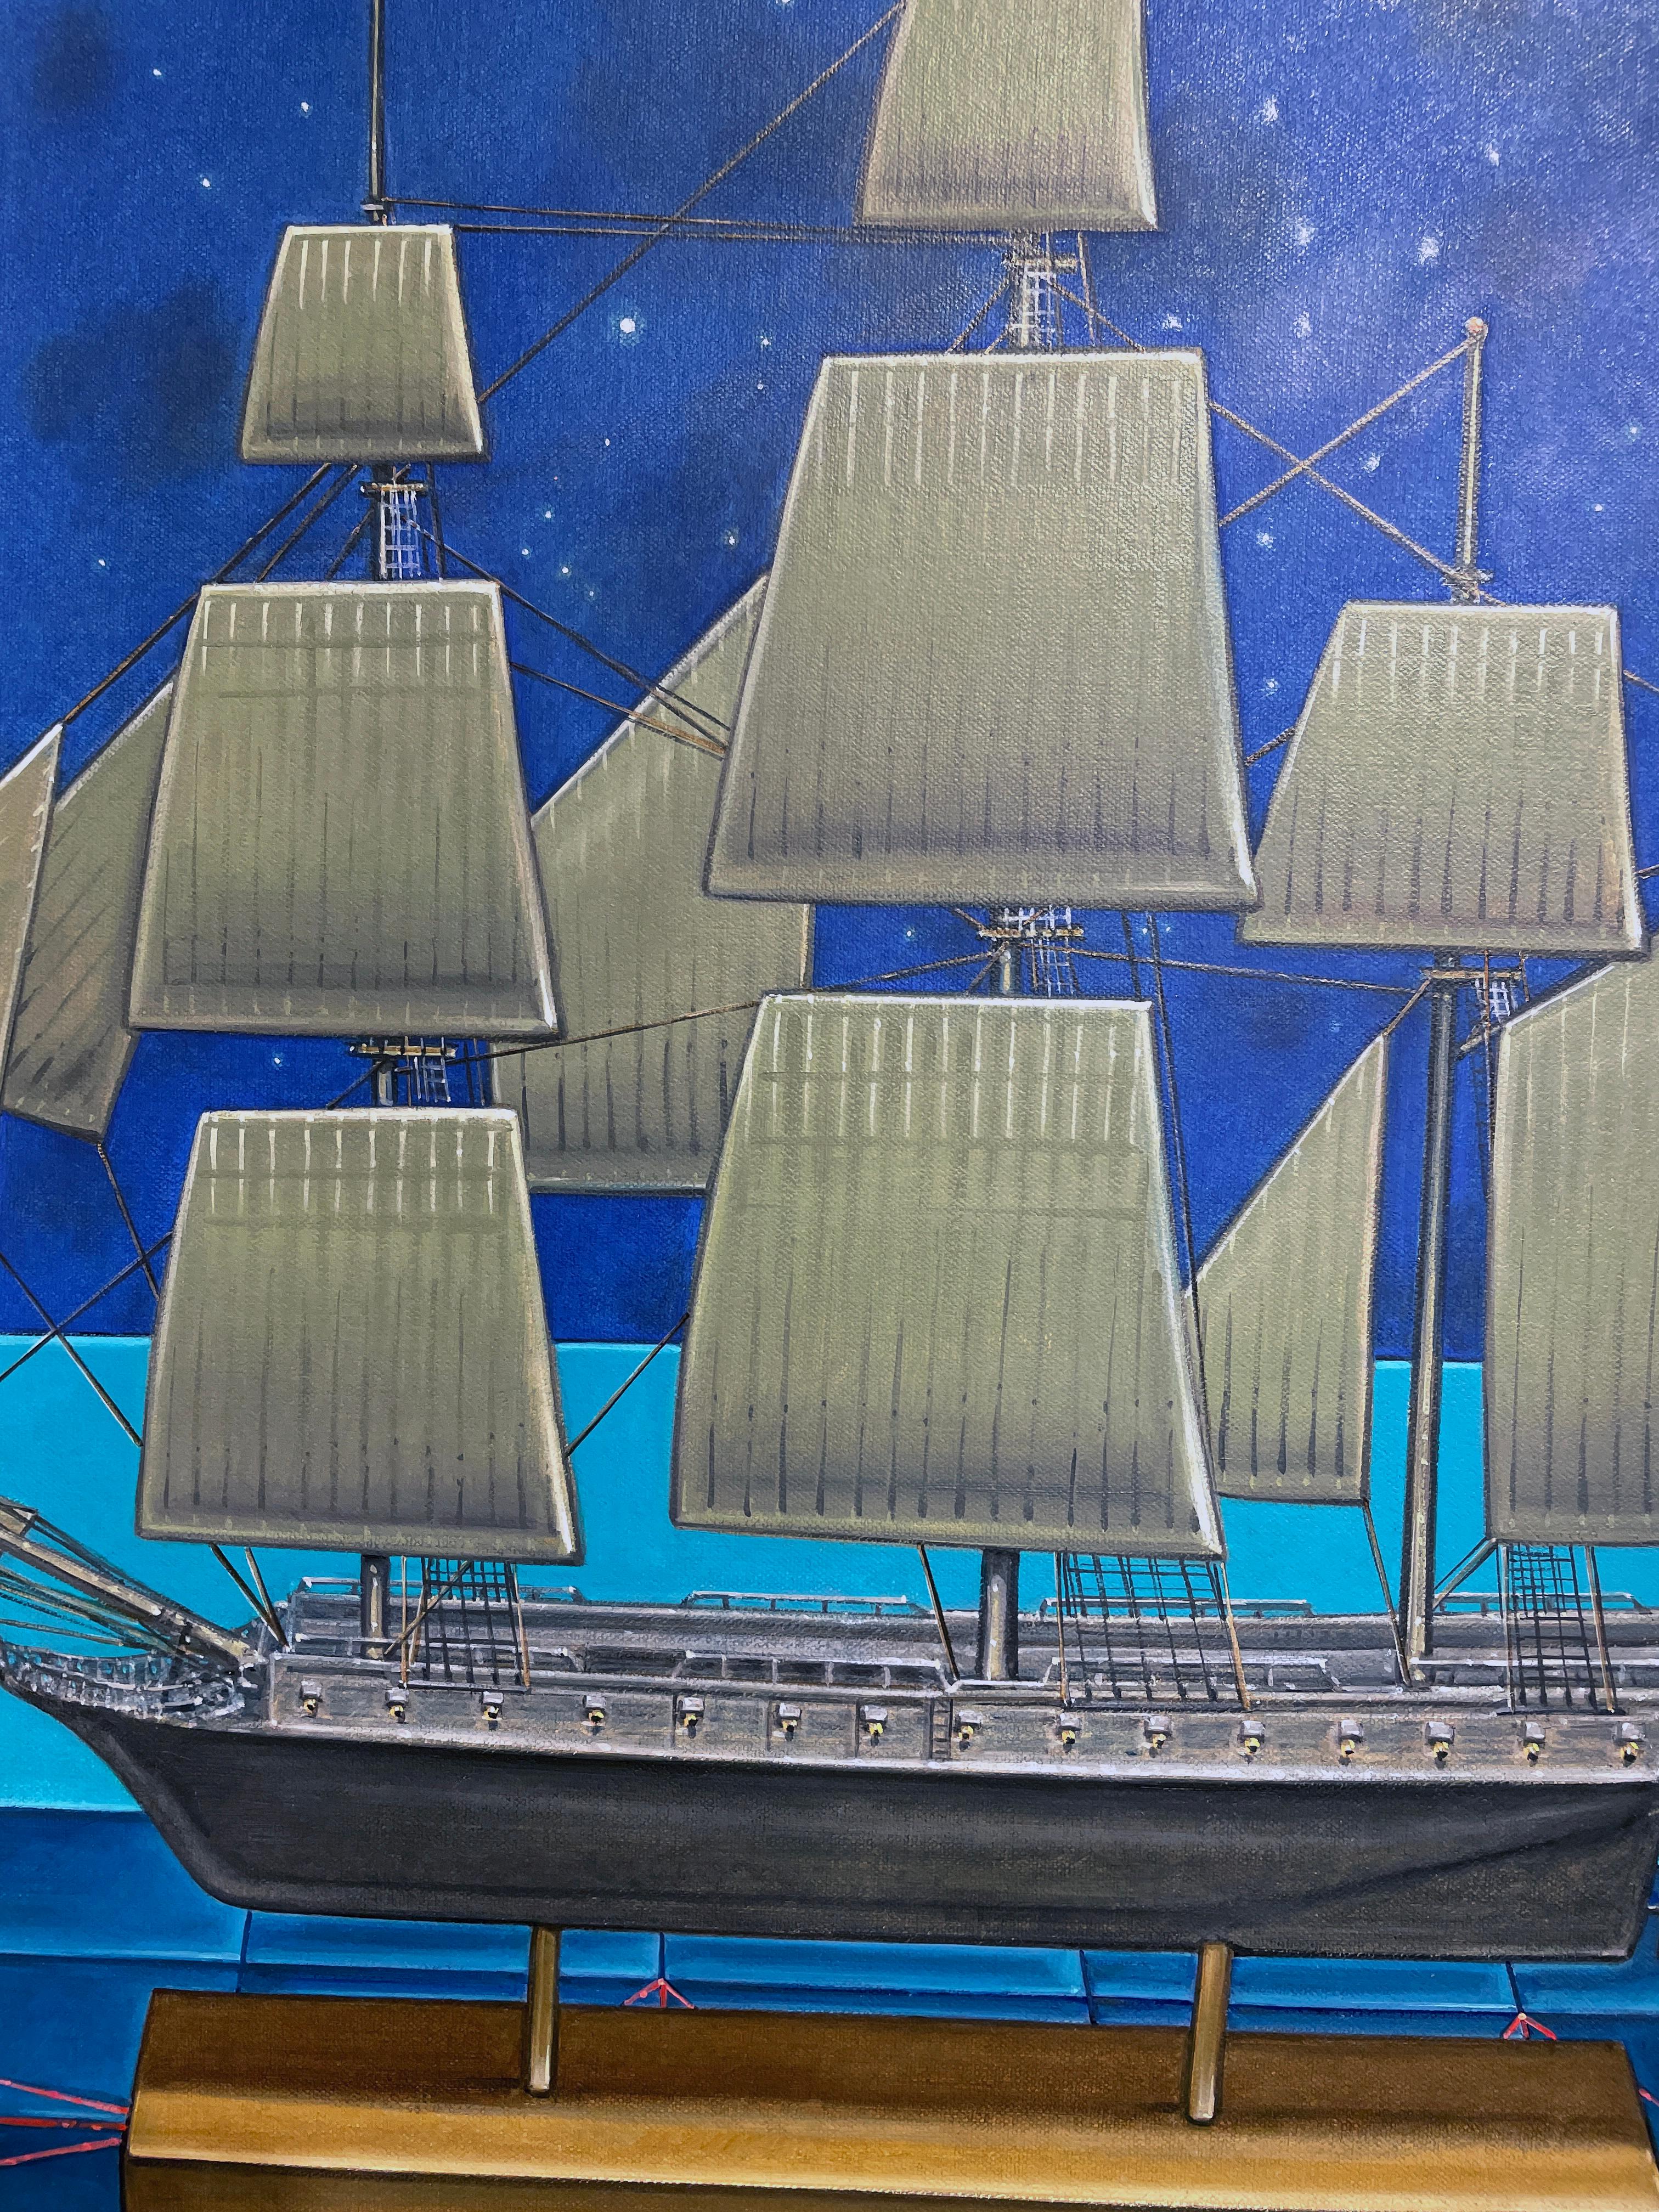 Une maquette de bateau pirate domine la toile de fond géométrique de cette peinture perplexe intitulée 